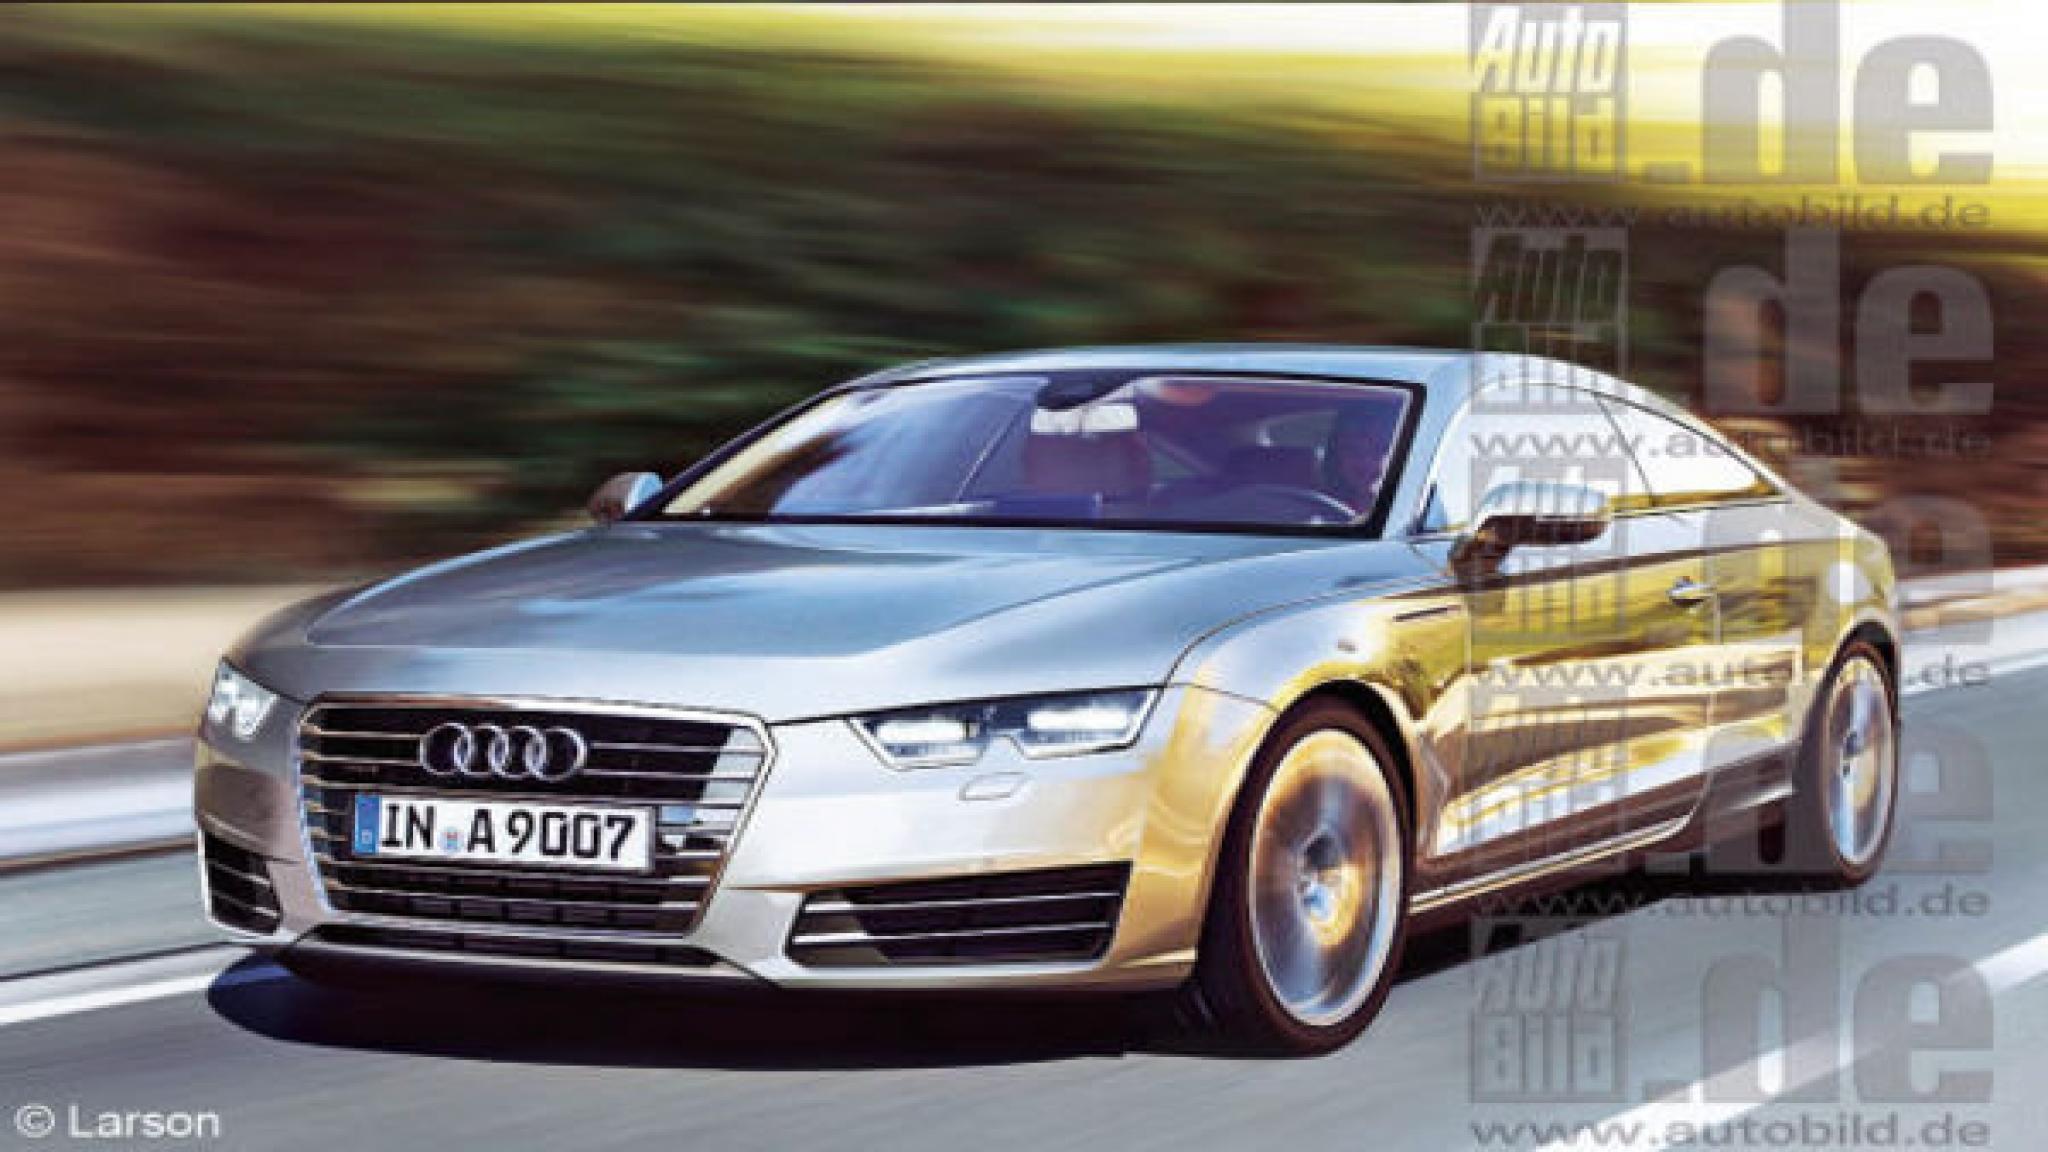 Audi A9 Wallpaper